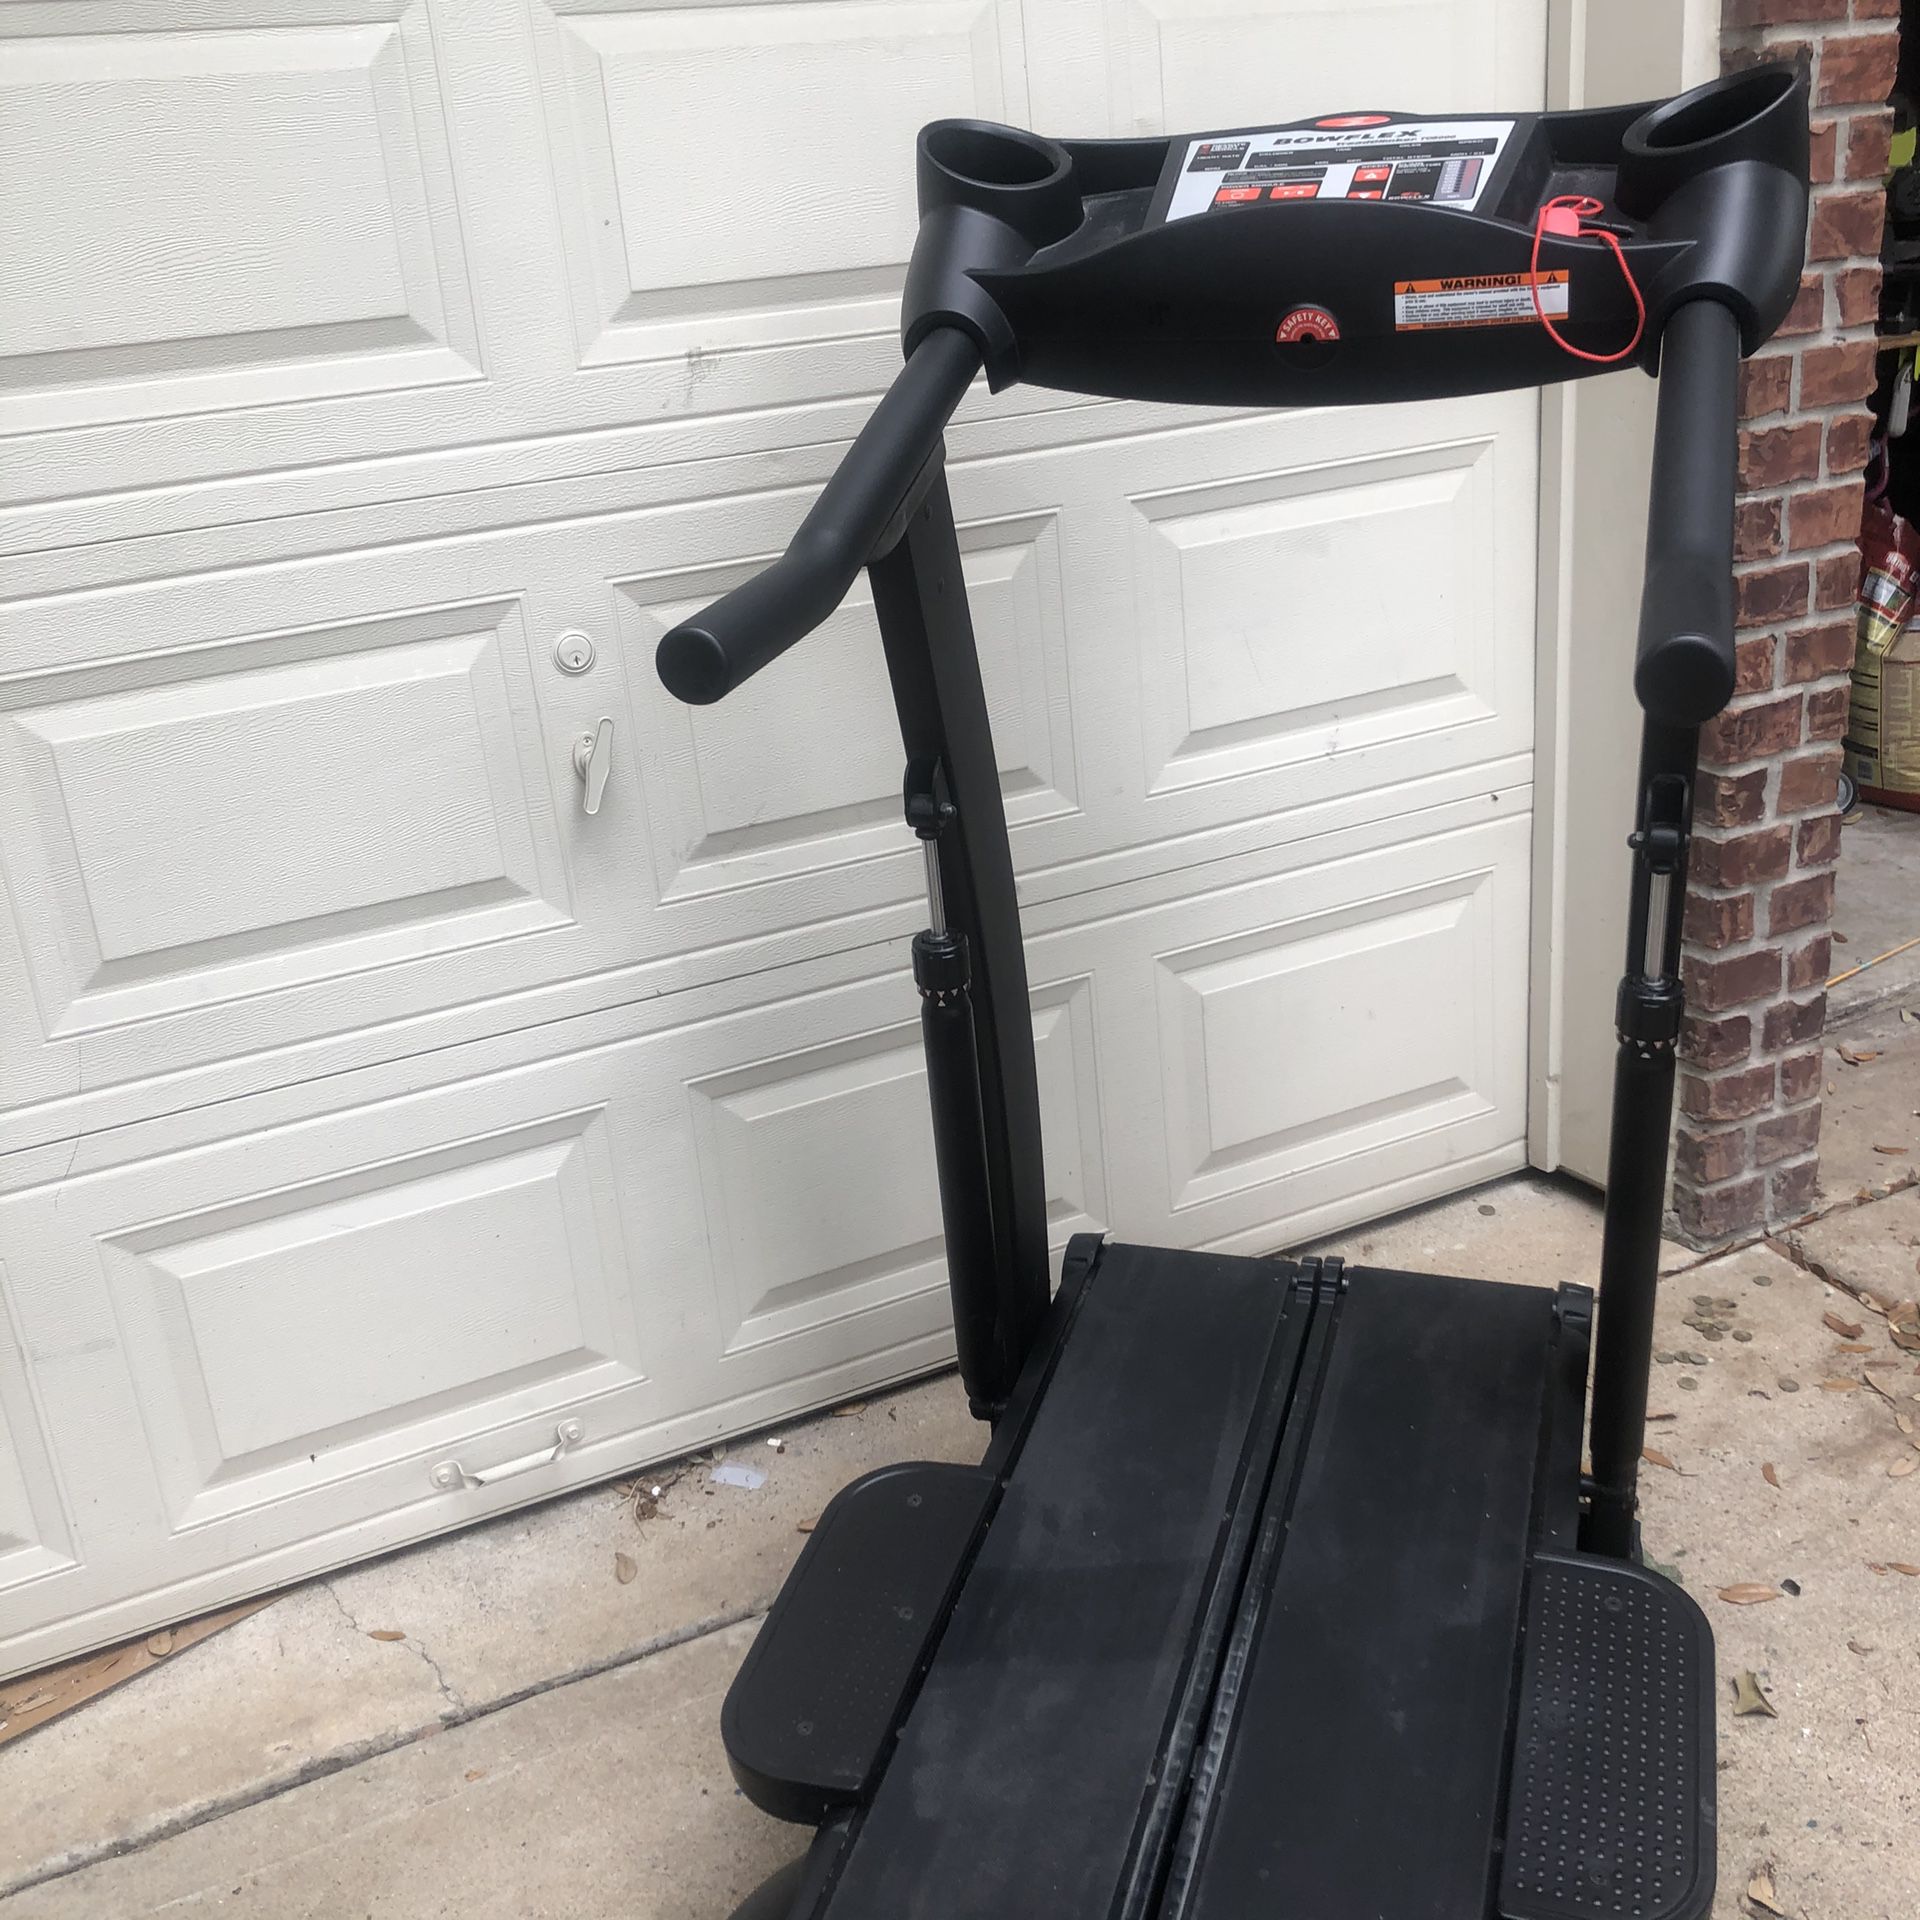 Bowflex treadmill(treadclimer. Tc5000)